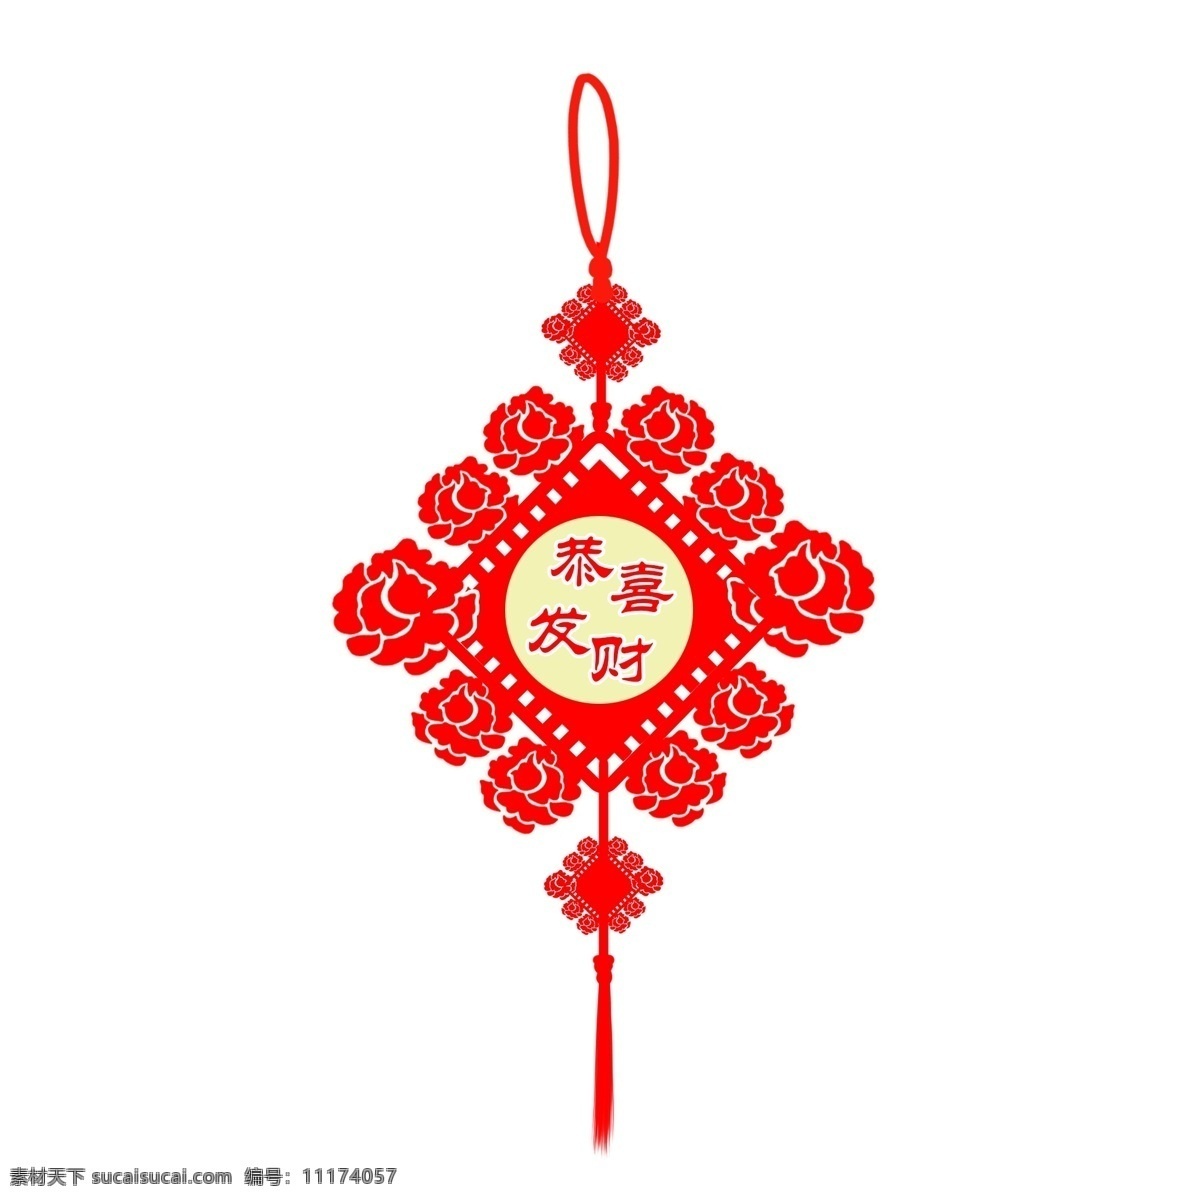 中国结 中国 风 恭喜发财 元素 手绘 中国风 新年 节日 手绘中国结